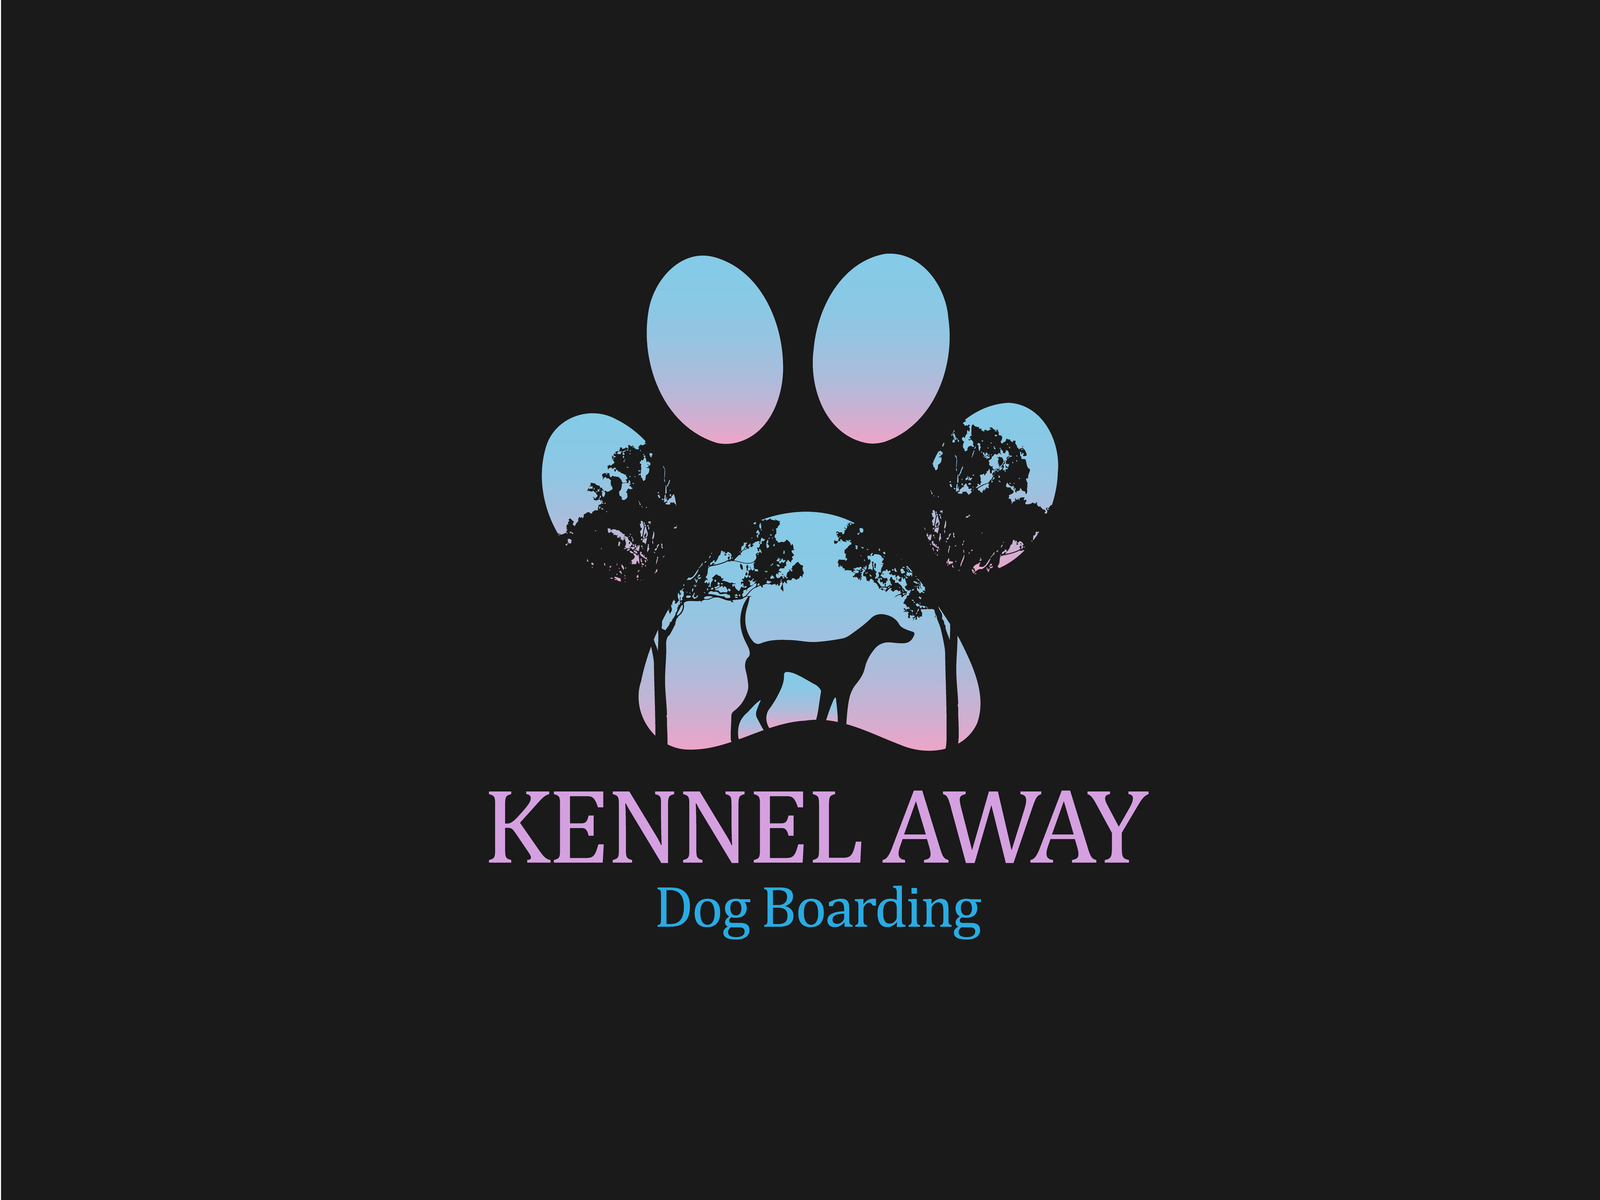 kennel logo ideas 2